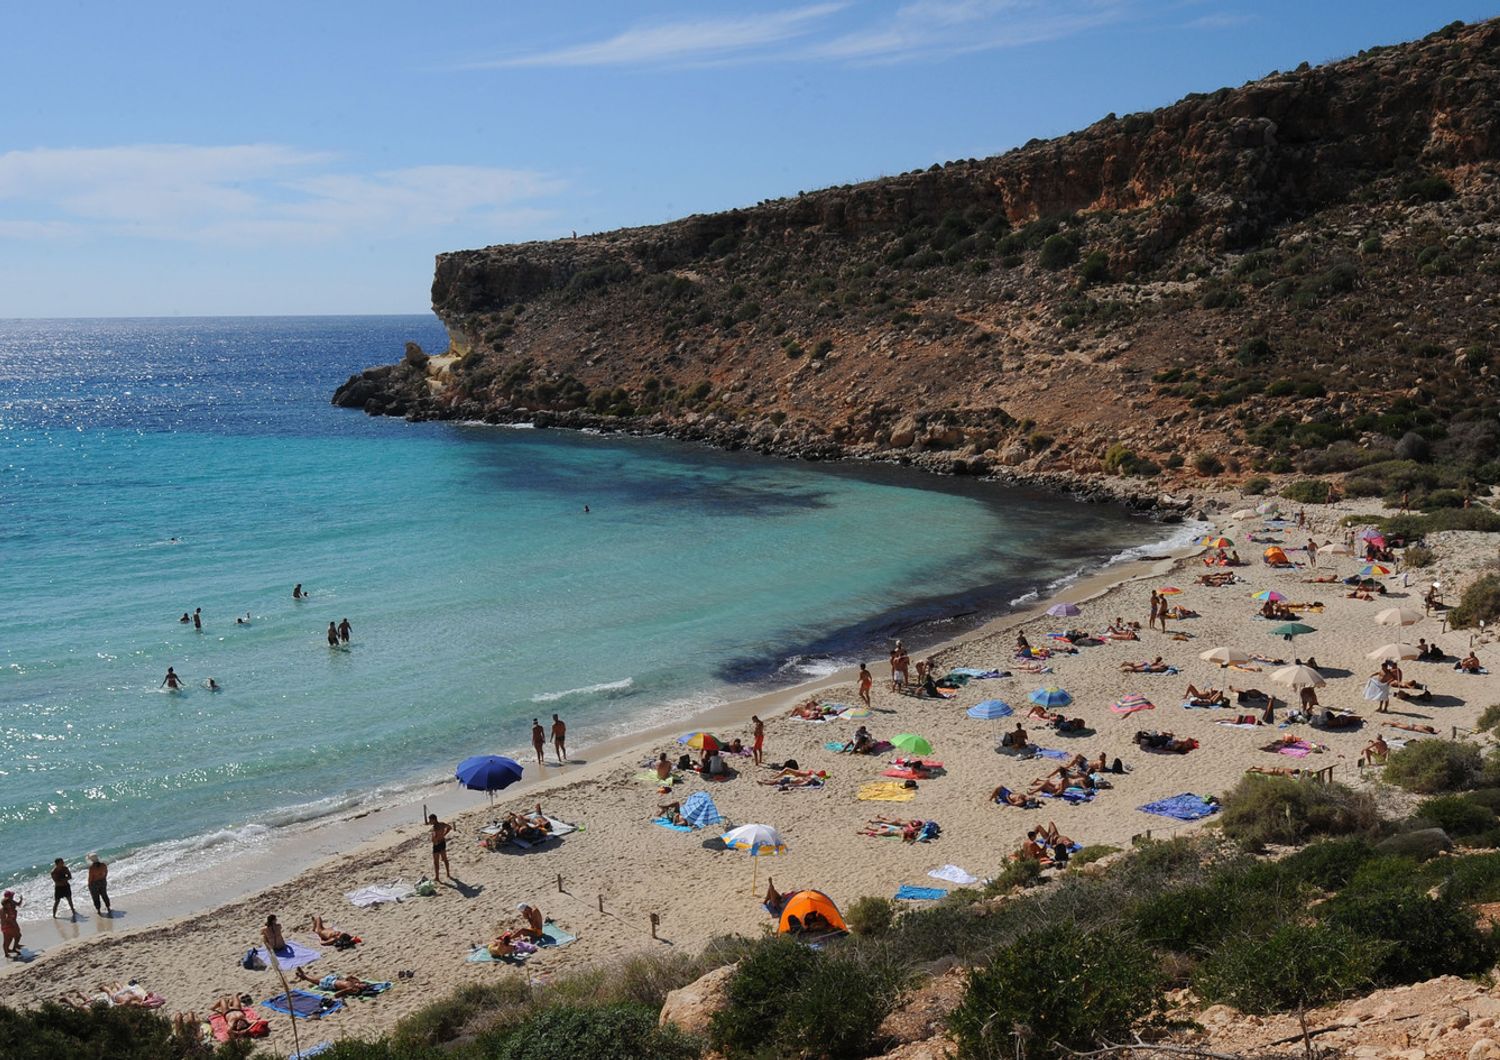 Lampedusa, la spiaggia dei conigli (Afp)